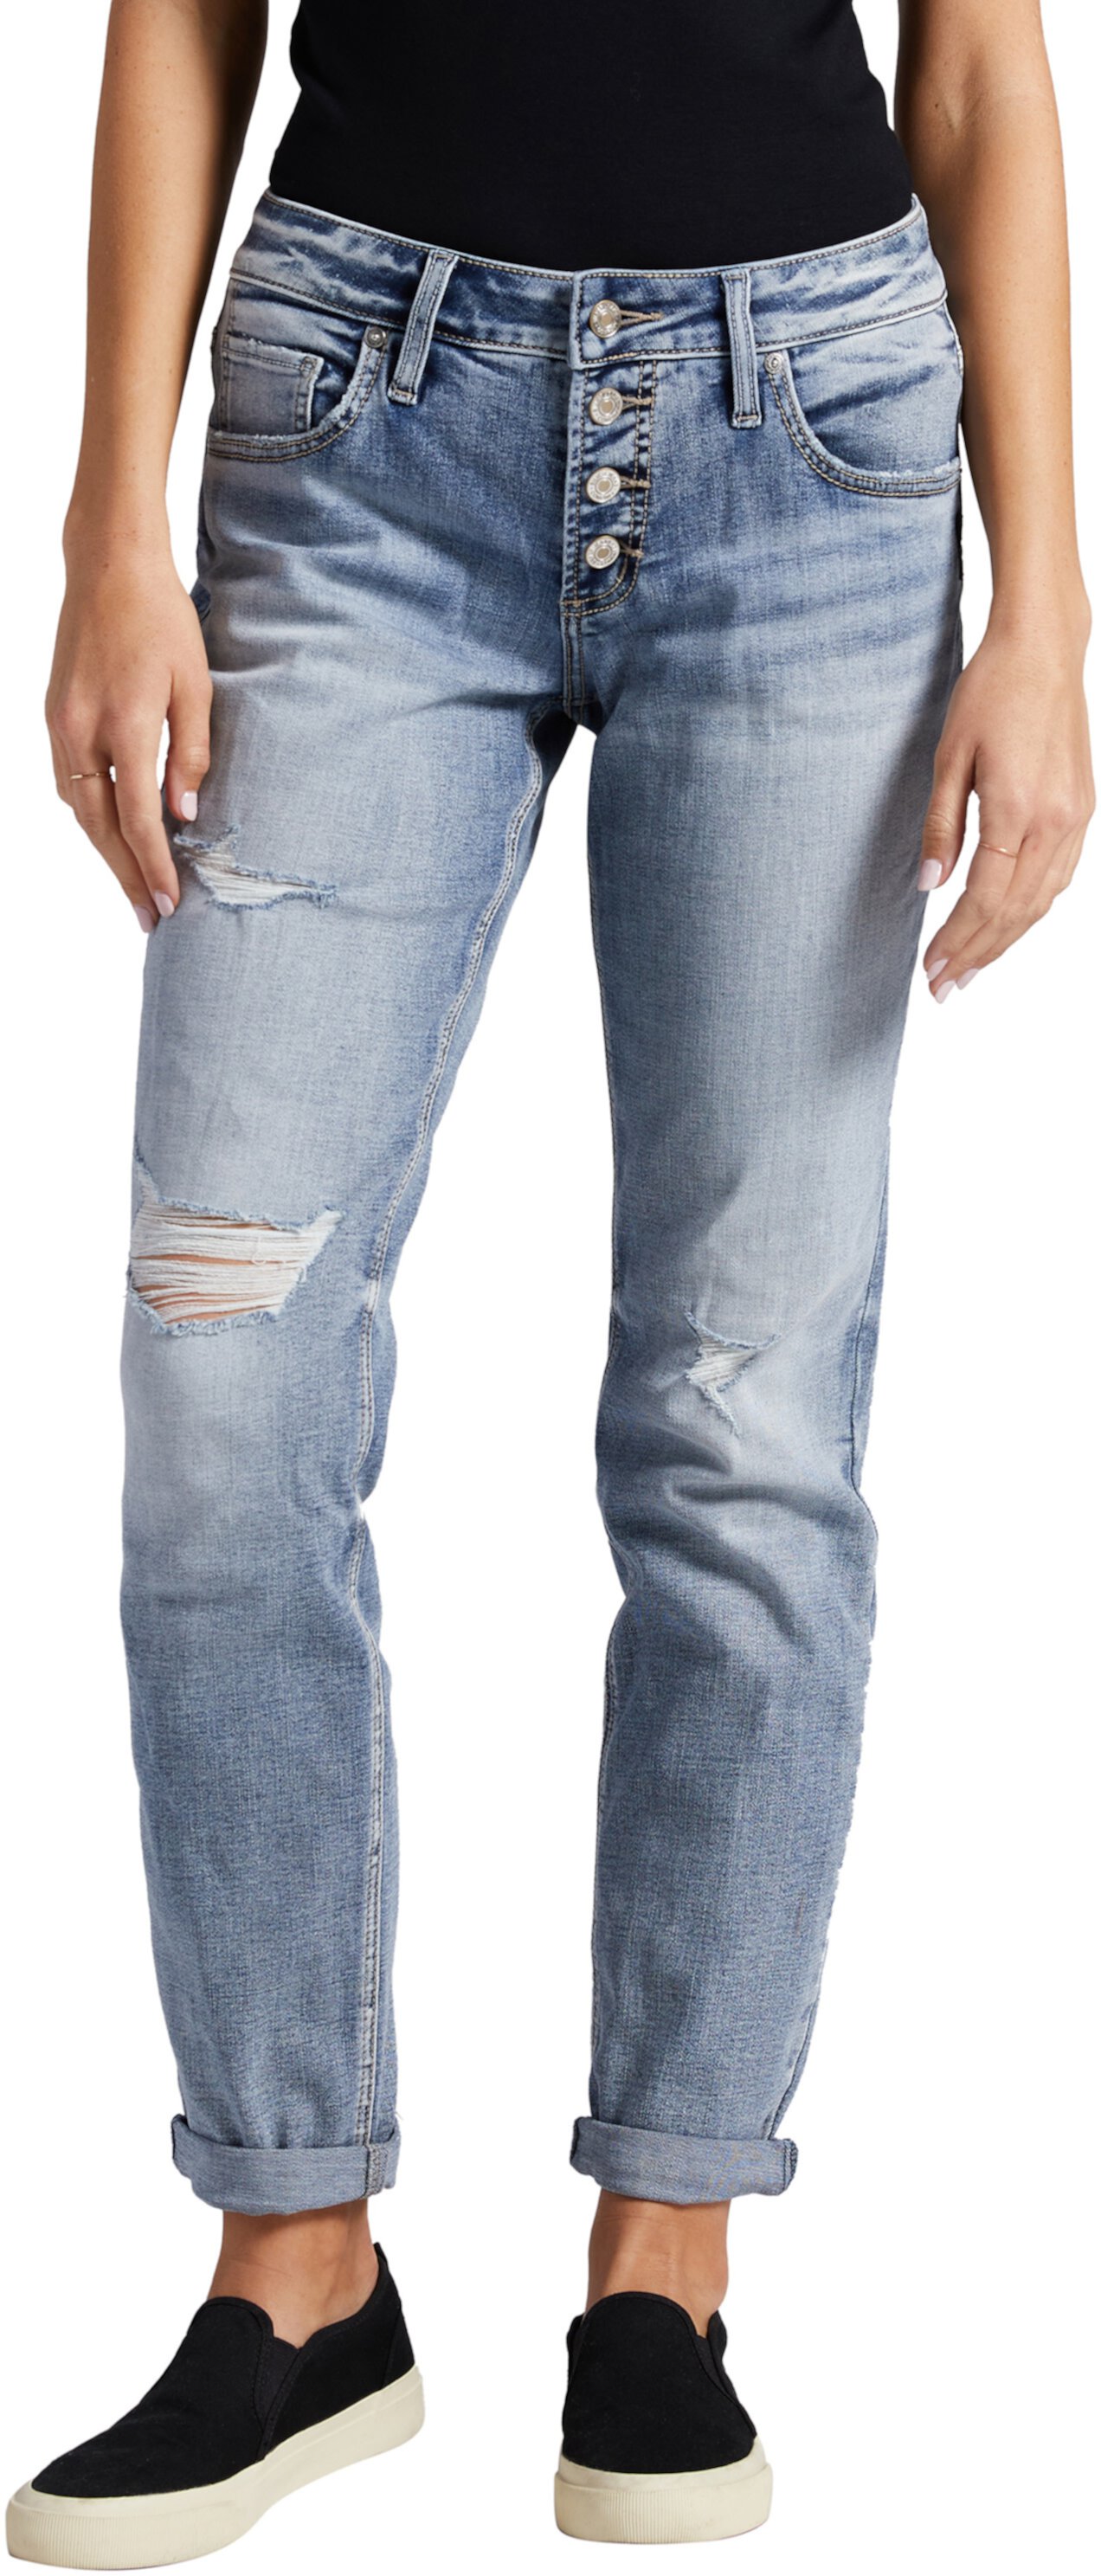 Узкие джинсы бойфренда со средней посадкой L27161ECF295 Silver Jeans Co.